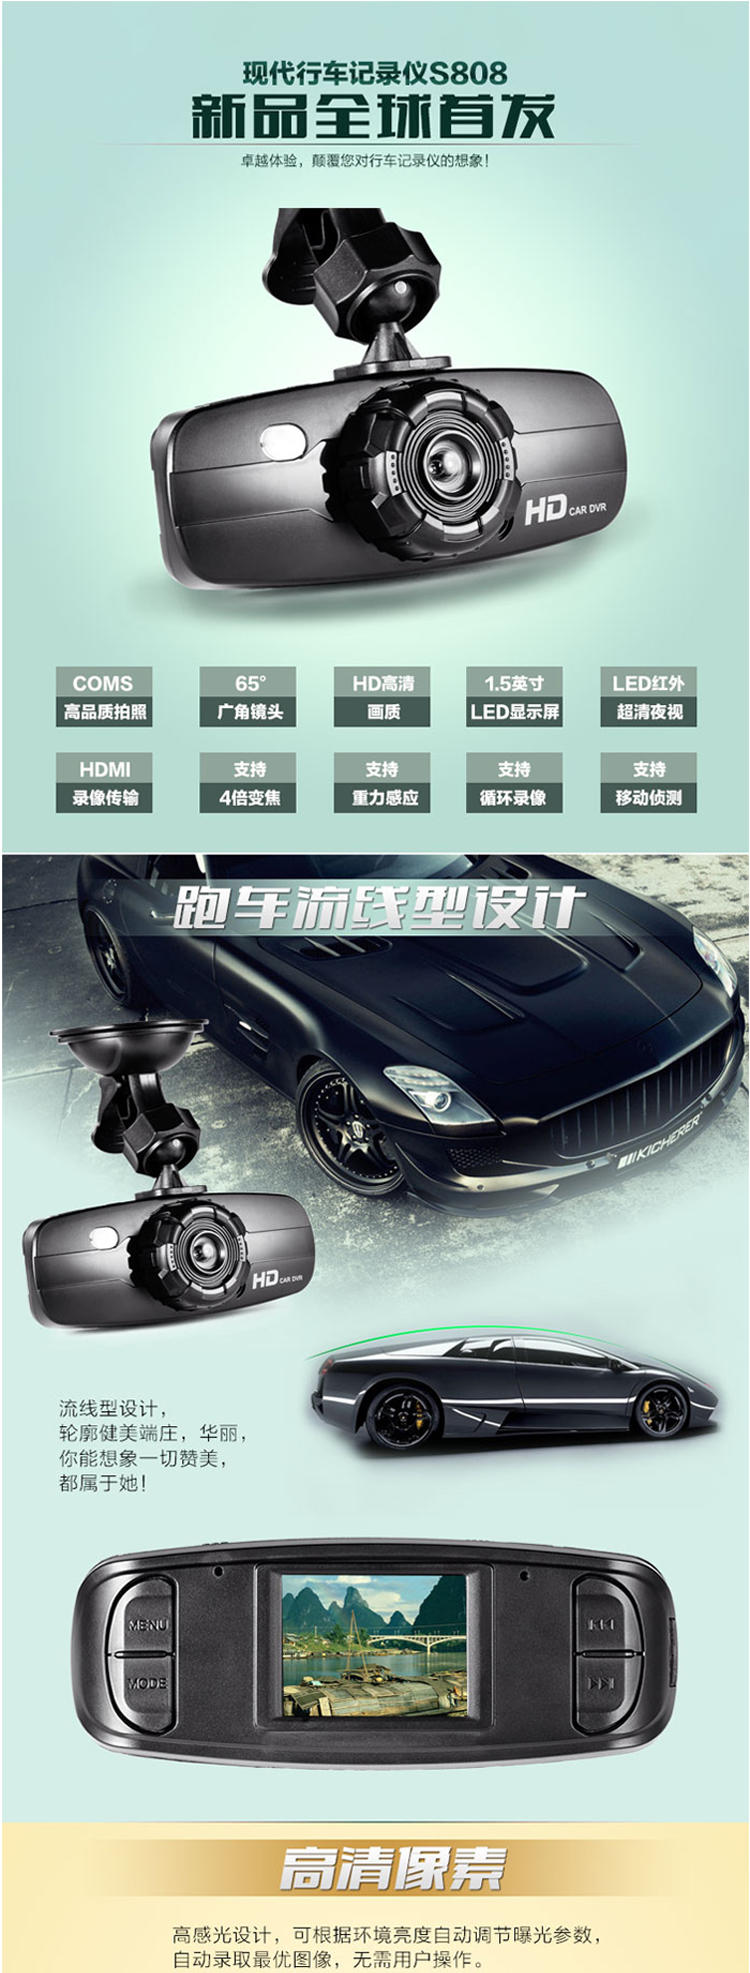 HYUNDAI 韩国现代 超薄便携式行车记录仪 CR-808 1.5英寸高清屏 65度角